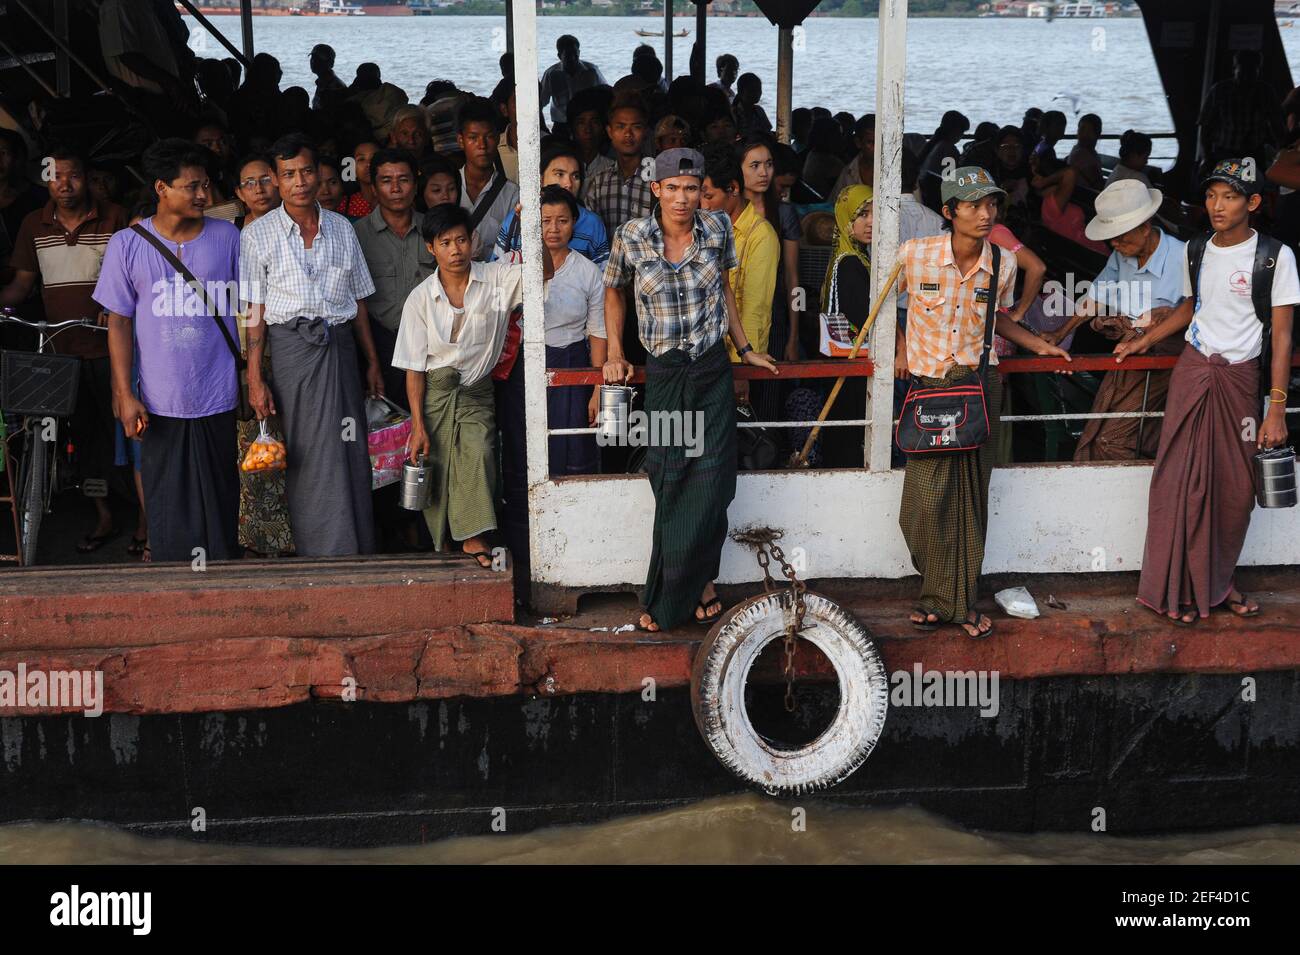 22,11.2013, Yangon, Myanmar, Asien - Pendler auf einer Yangon nach Dala (Dalah) Fähre kommen am Dala Fährhafen nach der Überquerung des Yangon Flusses an. Stockfoto